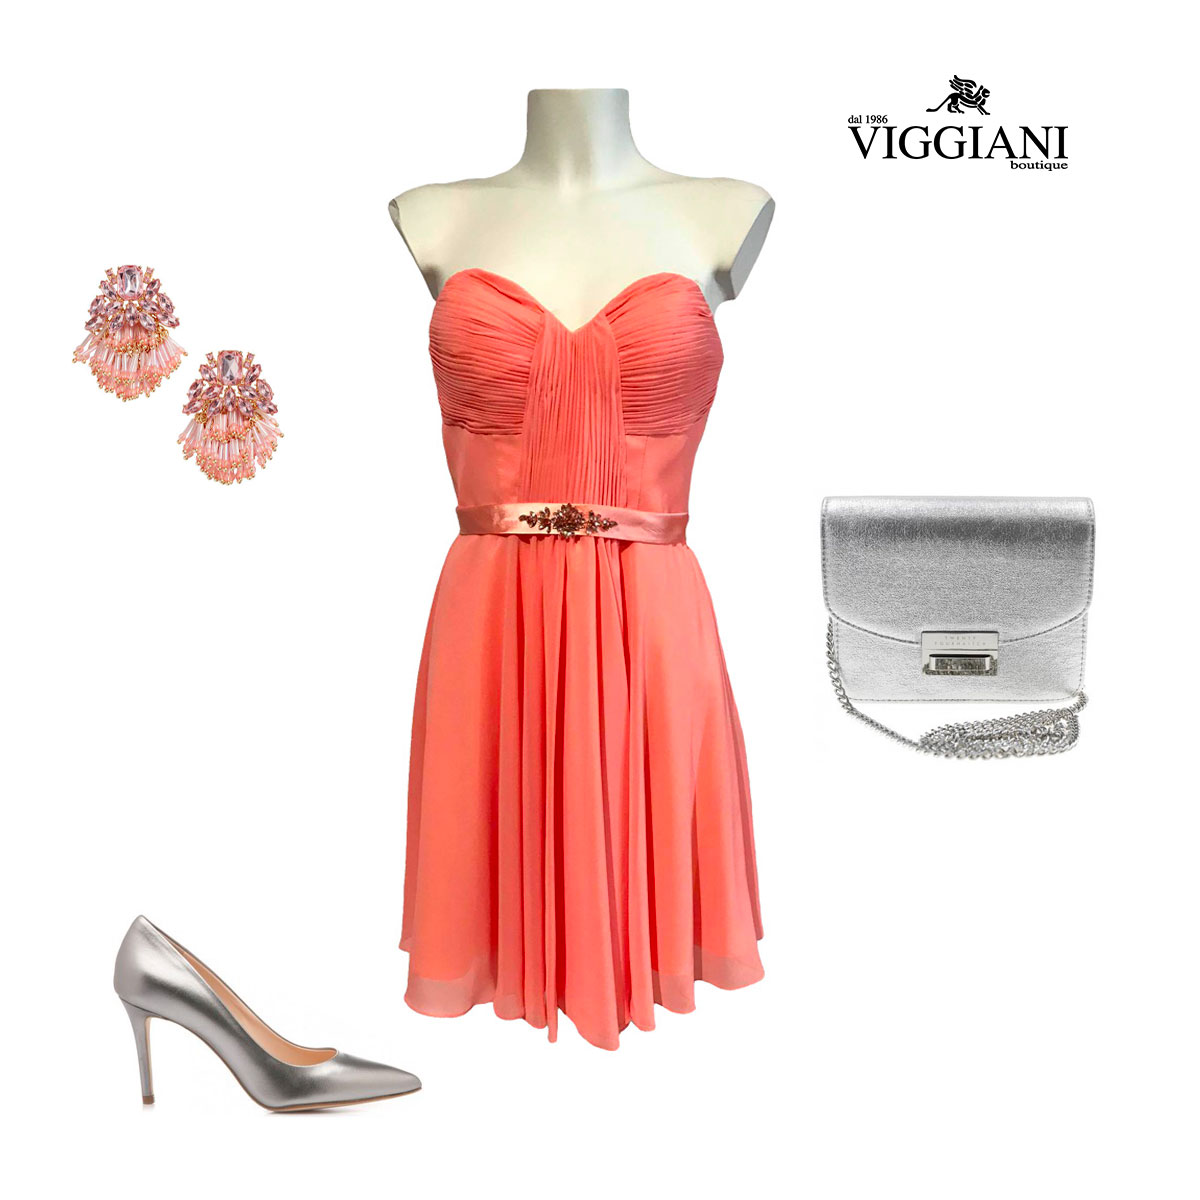 Outfit 8 Party in piscina estate - Boutique Viggiani - Shopping online - Abbigliamento donna casual e cerimonia a Pisticci